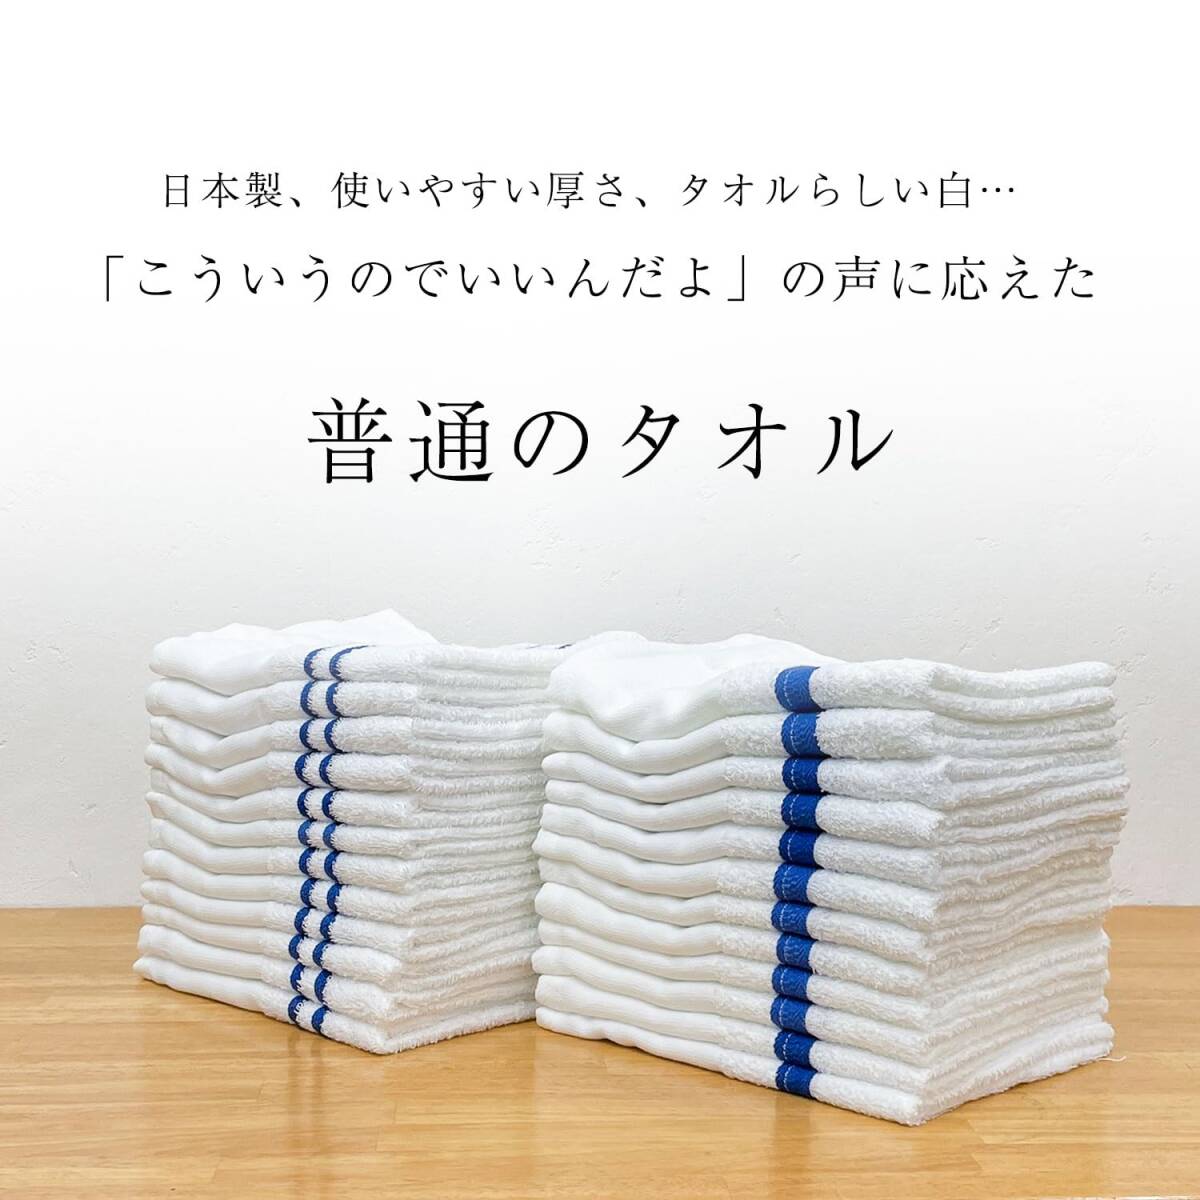 泉州タオル(Sensyu Towel) 使いやすい普通の白タオル(平地・青線つき) 12枚セット 中薄手 日本製 フェイスタオル 220匁 綿1_画像2